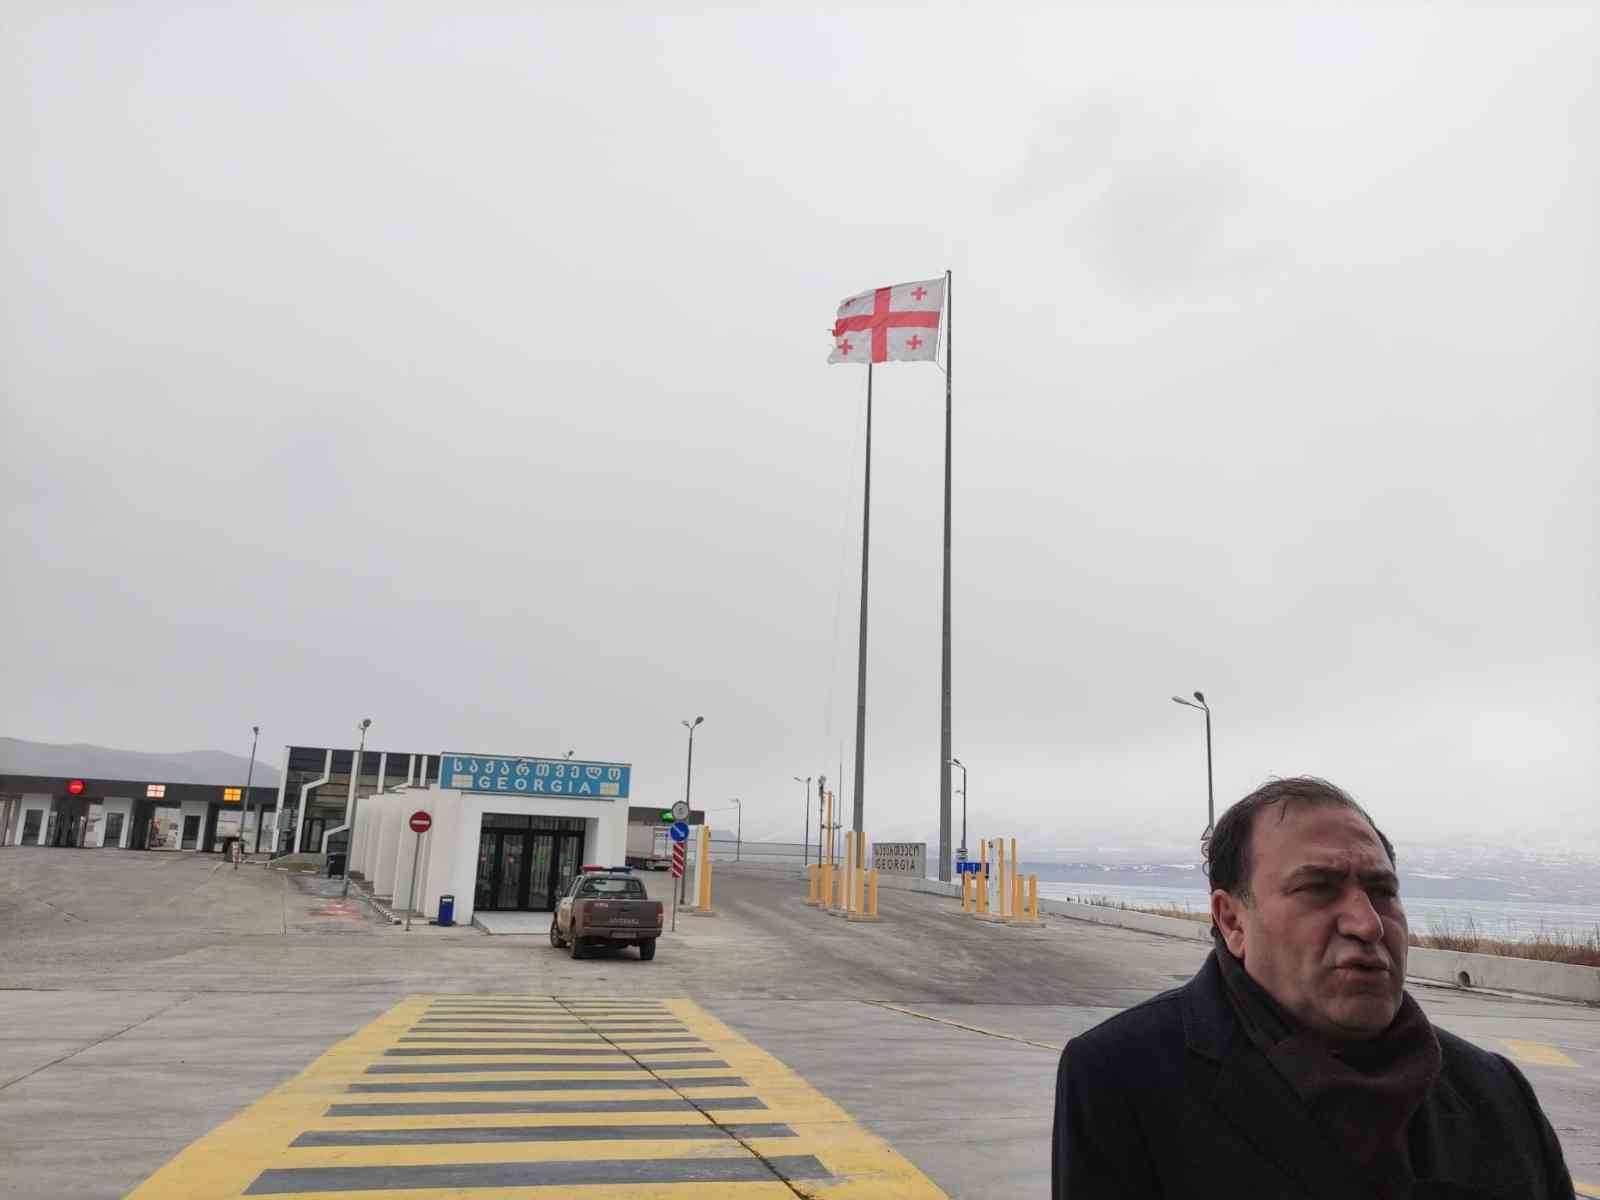 Gürcistan, sınır kapılarının yolcu trafiğine açılmasına izin verdi #ardahan